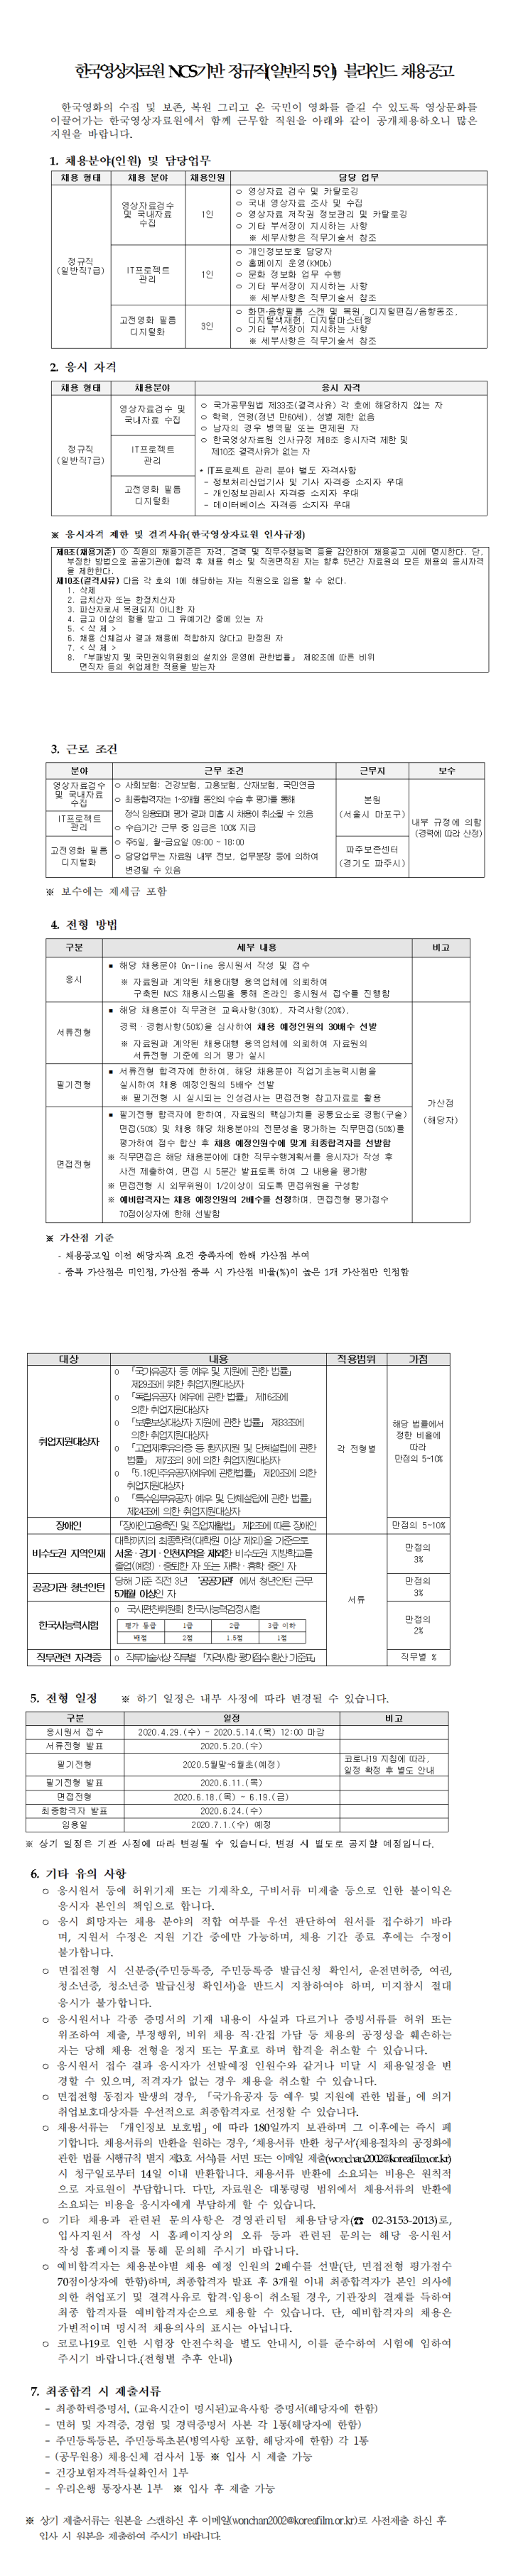 [채용][한국영상자료원] NCS기반 정규직(일반직 5인) 블라인드 채용공고